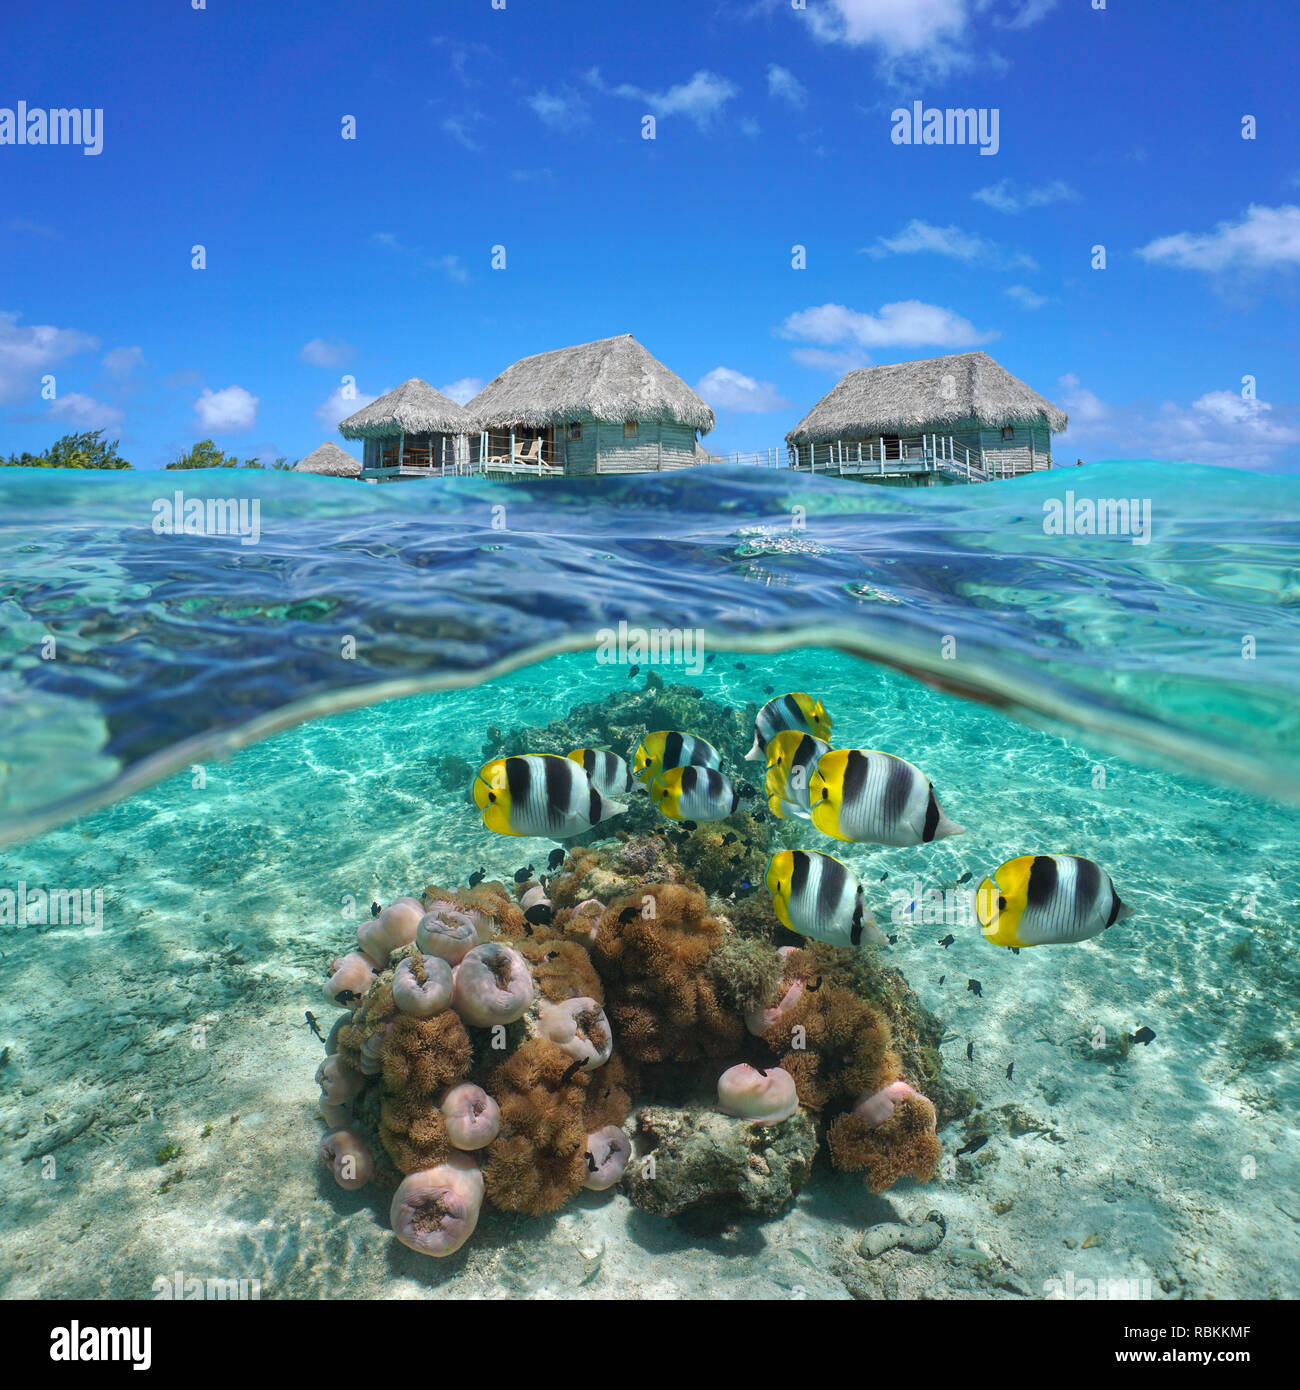 Strohgedeckte Bungalows über dem Wasser mit bunten tropischen Fischen und Seeanemonen Unterwasser, geteilte Ansicht Hälfte oberhalb und unterhalb der Wasseroberfläche, Französisch Polynesien Stockfoto